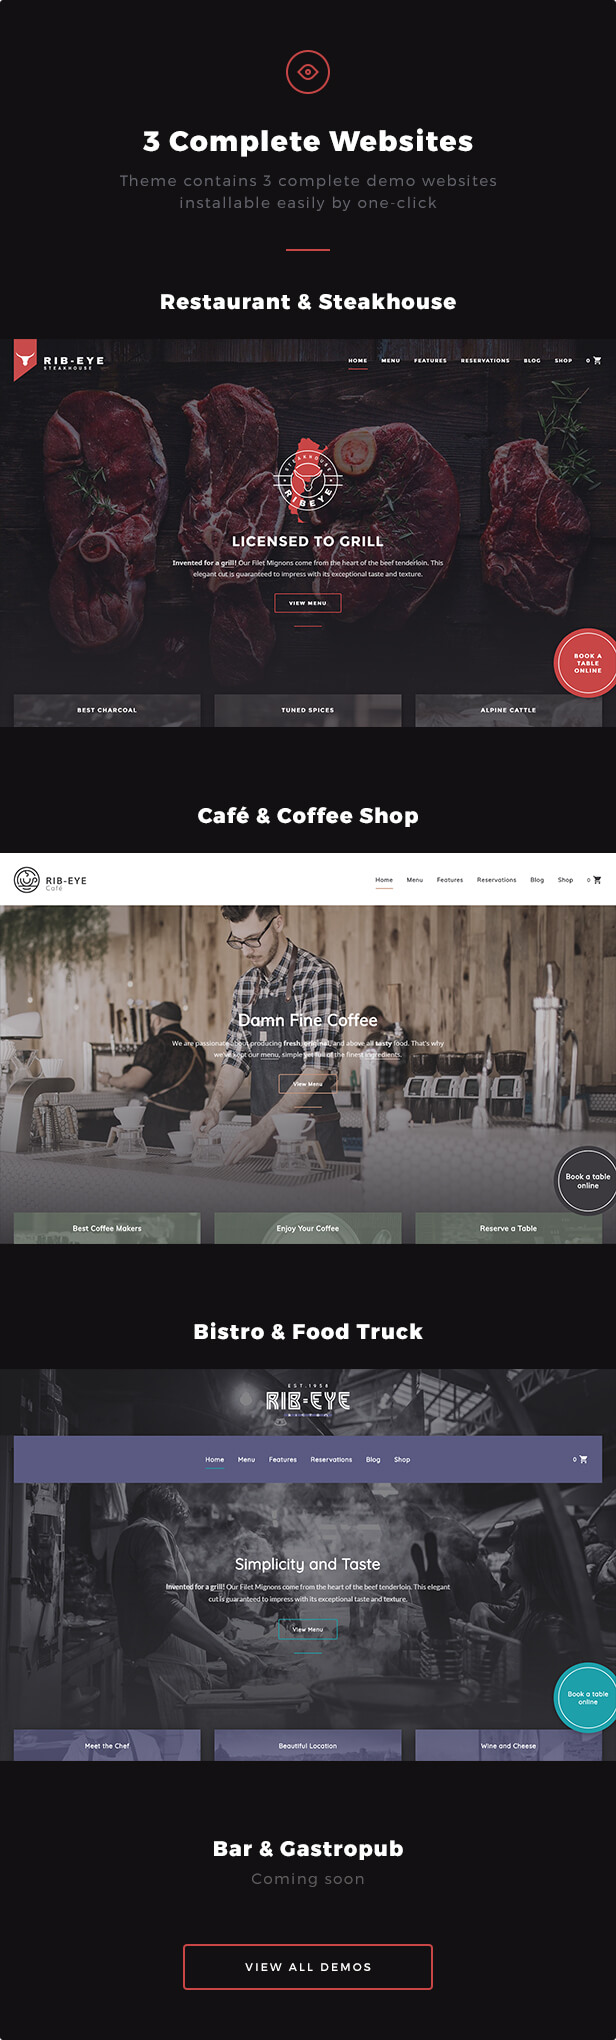 3 Complete Websites: Template enthält 3 vollständige Demo-Websites, die einfach mit einem Klick installiert werden können - Restaurant & Steakhouse, Café & Coffee Shop, Bistro & Food Truck